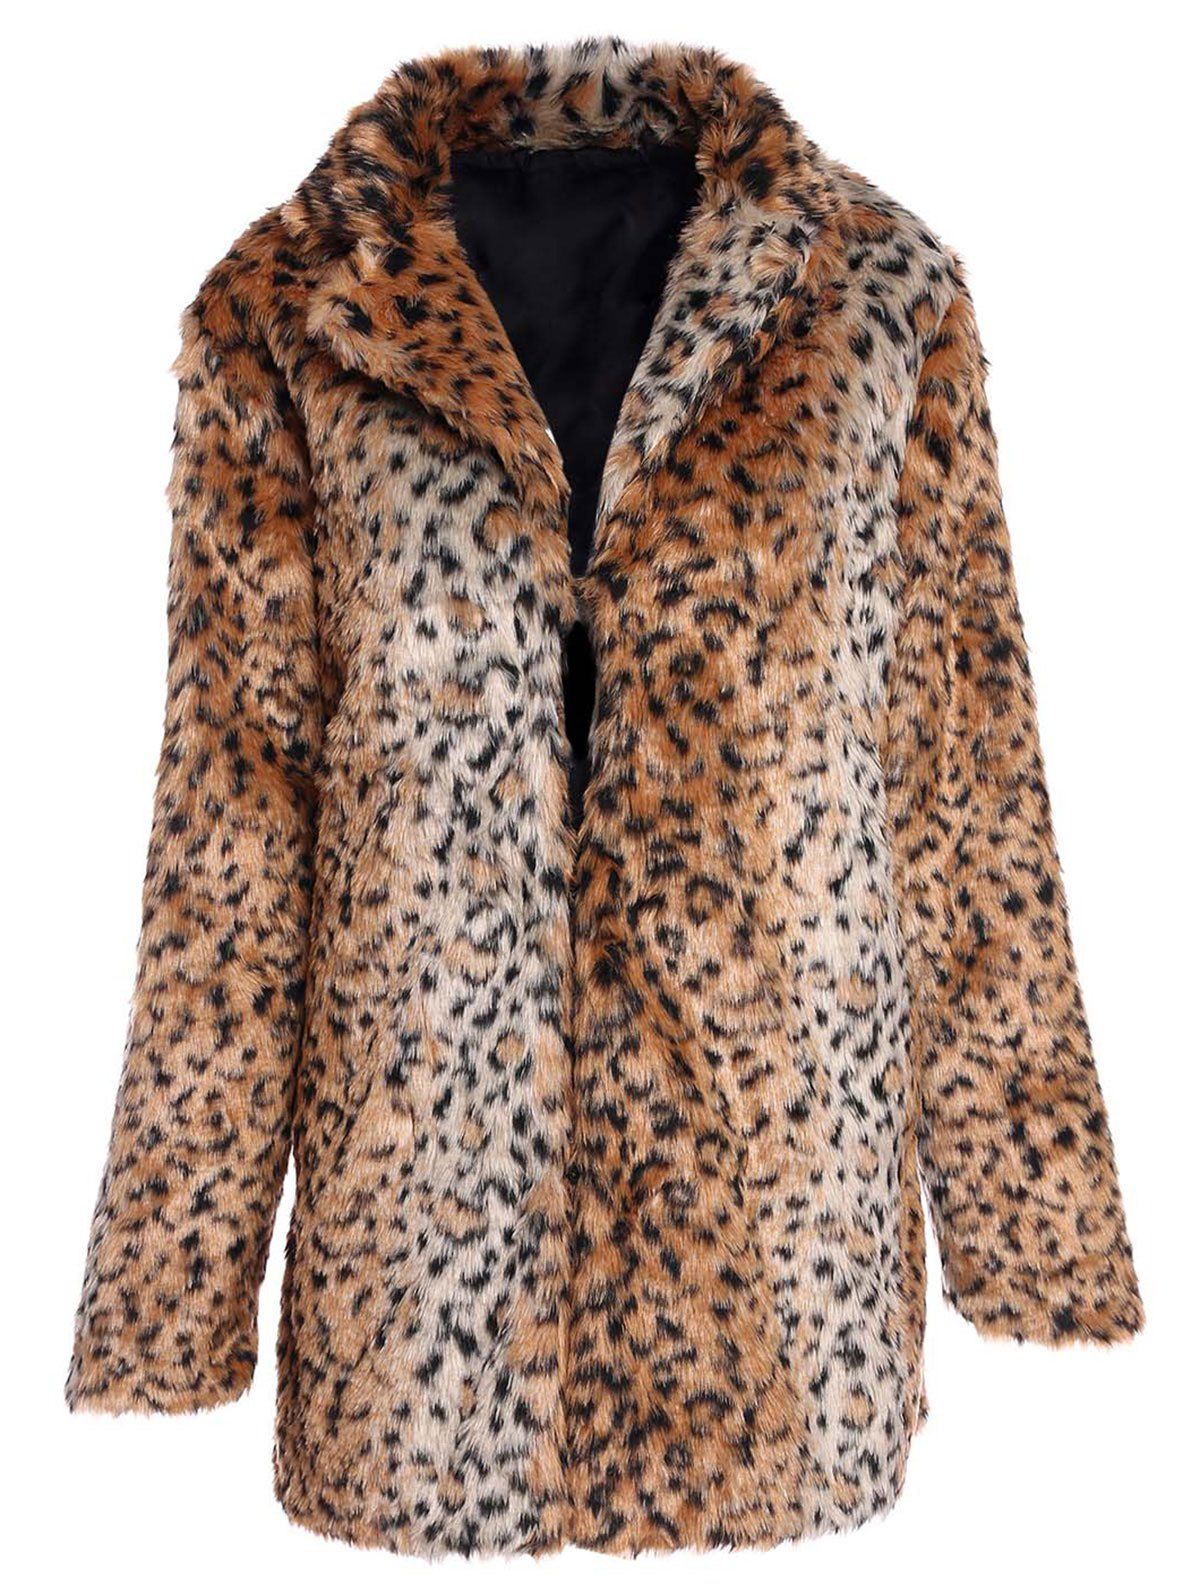 Trendy Long Sleeve Turn-Down Neck Pocket Design Faux Fur Women's Coat - LEOPARD S